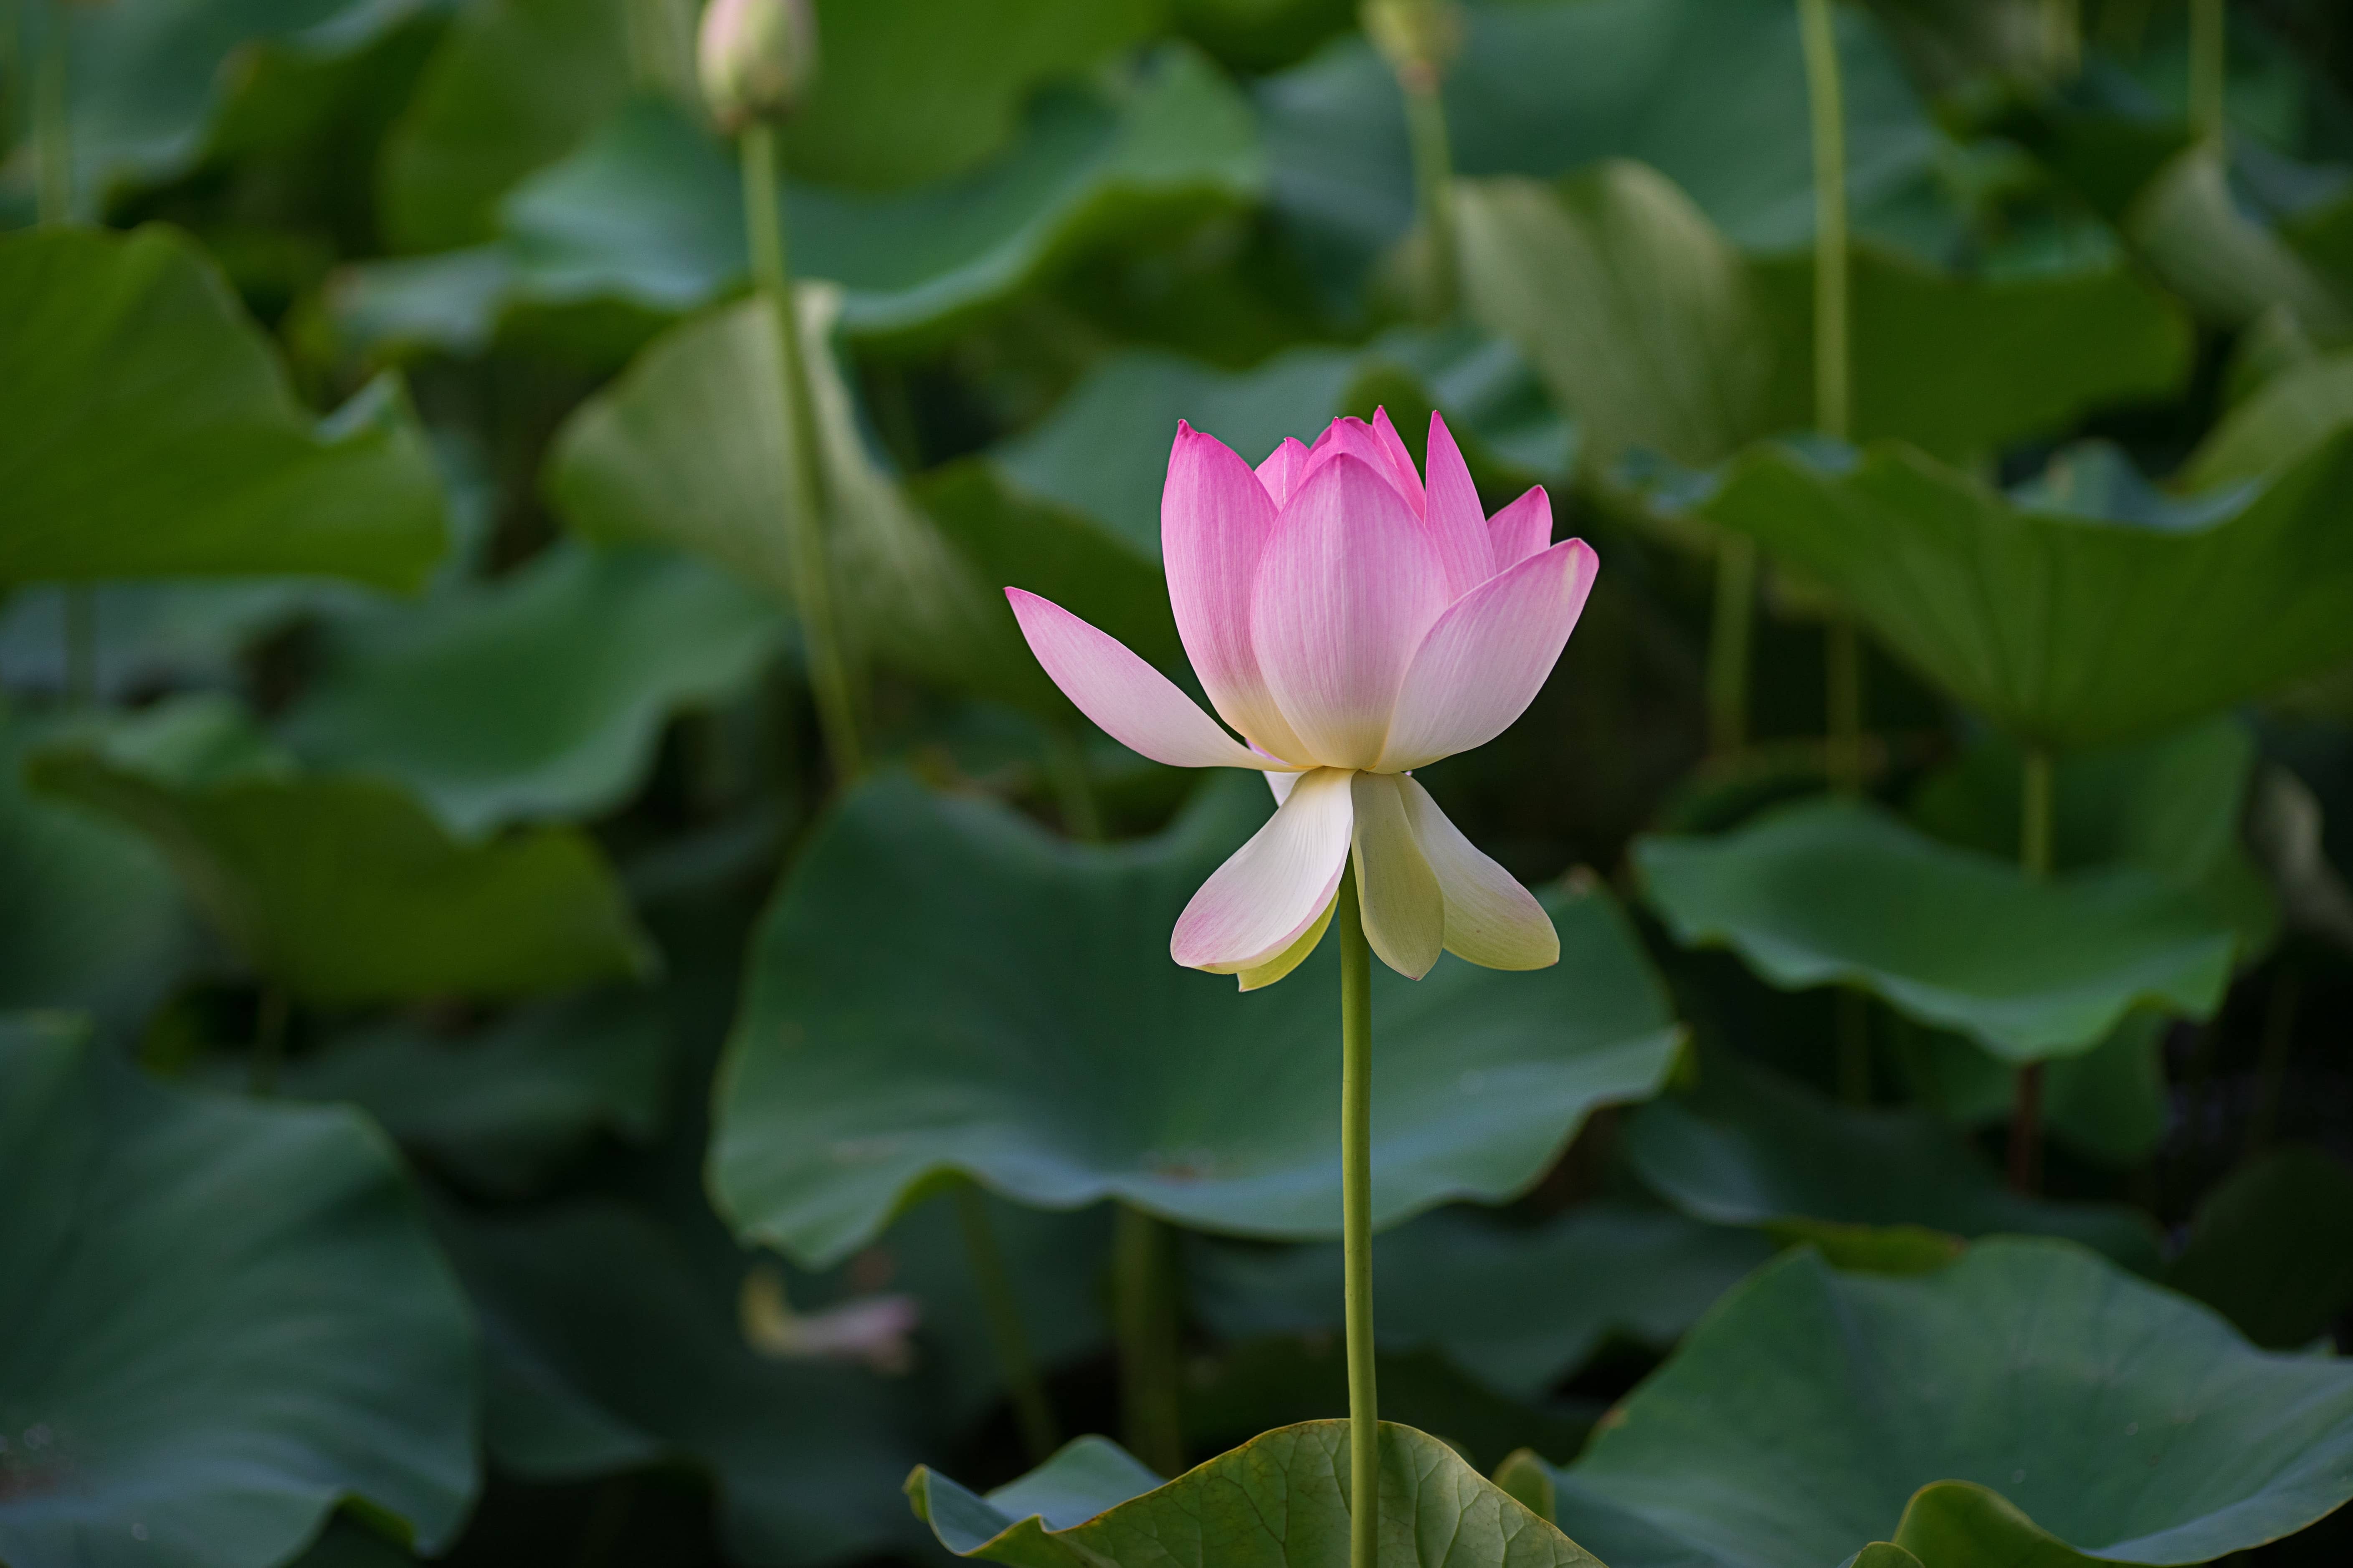 An lotus flower